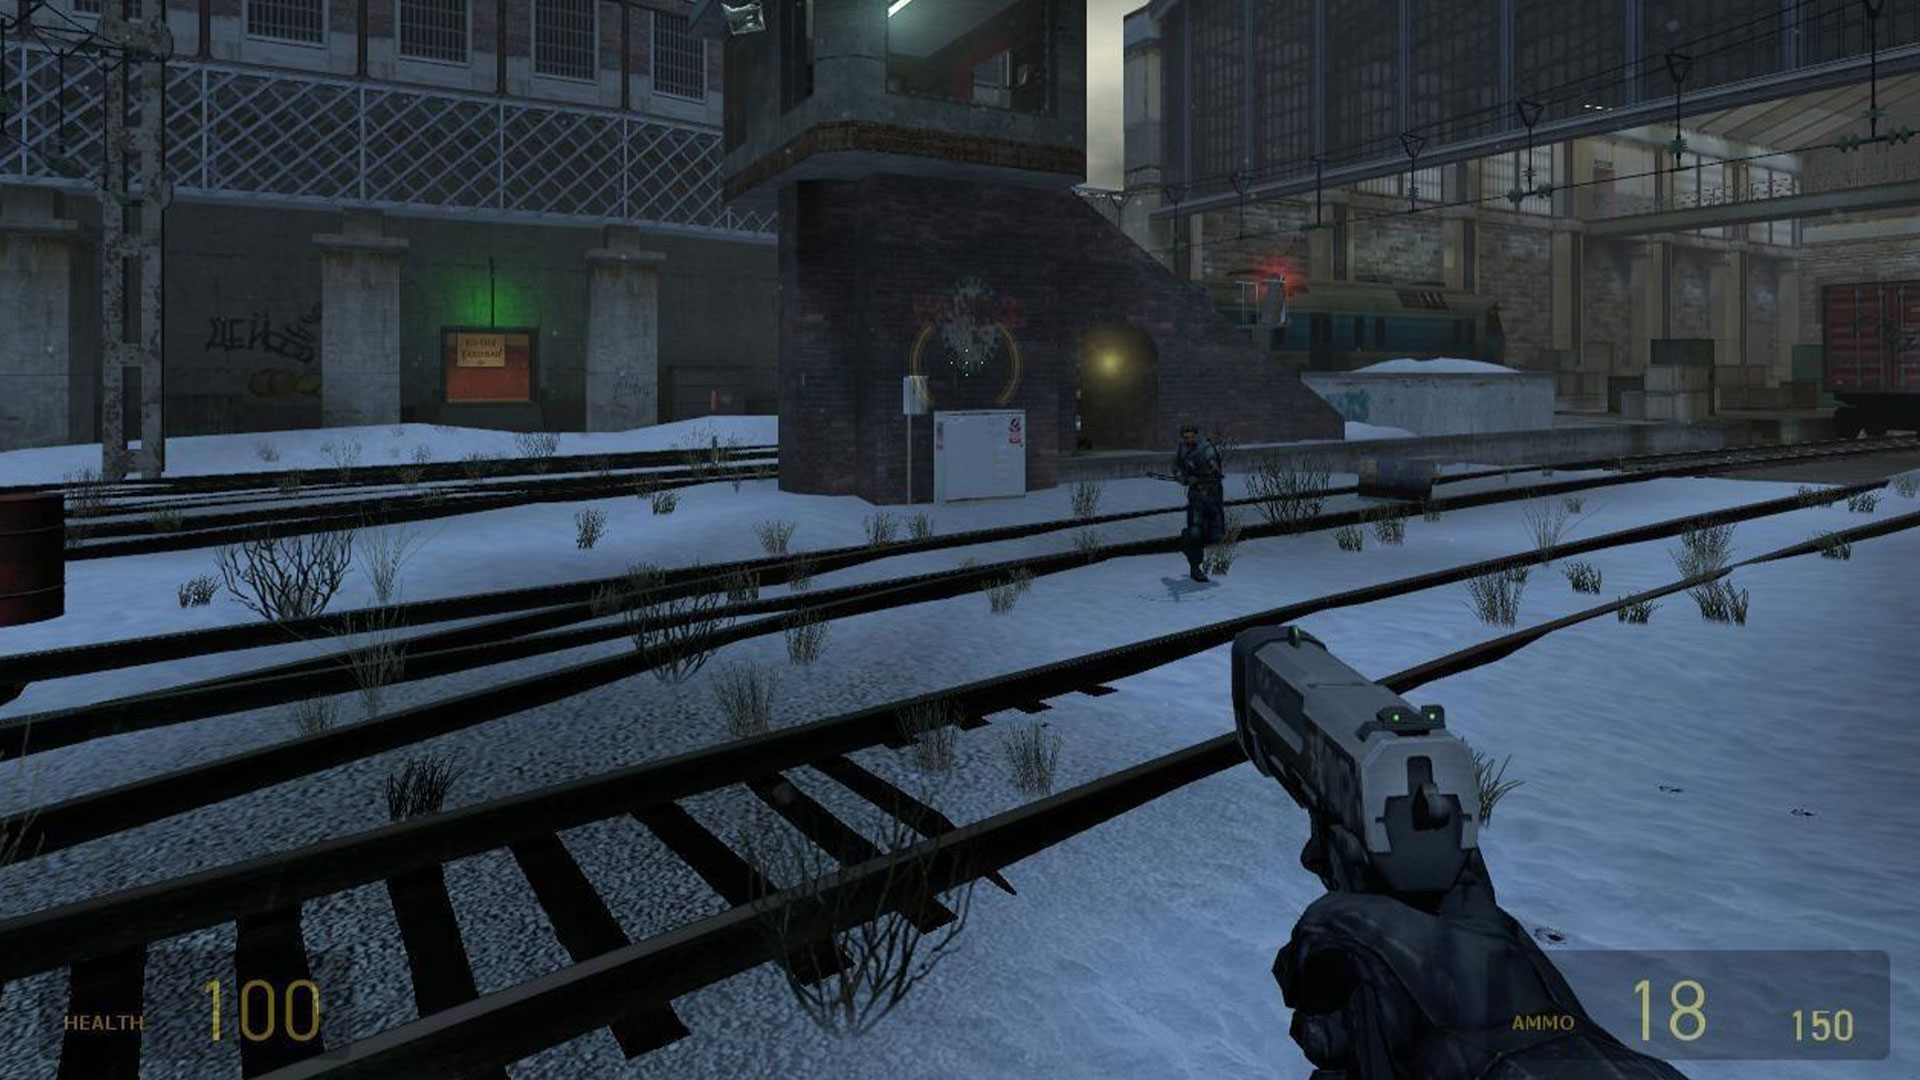 Half-Life 2」のデスマッチスクリーンショットが公開され、オンラインマルチプレイヤーアクションが確認できる